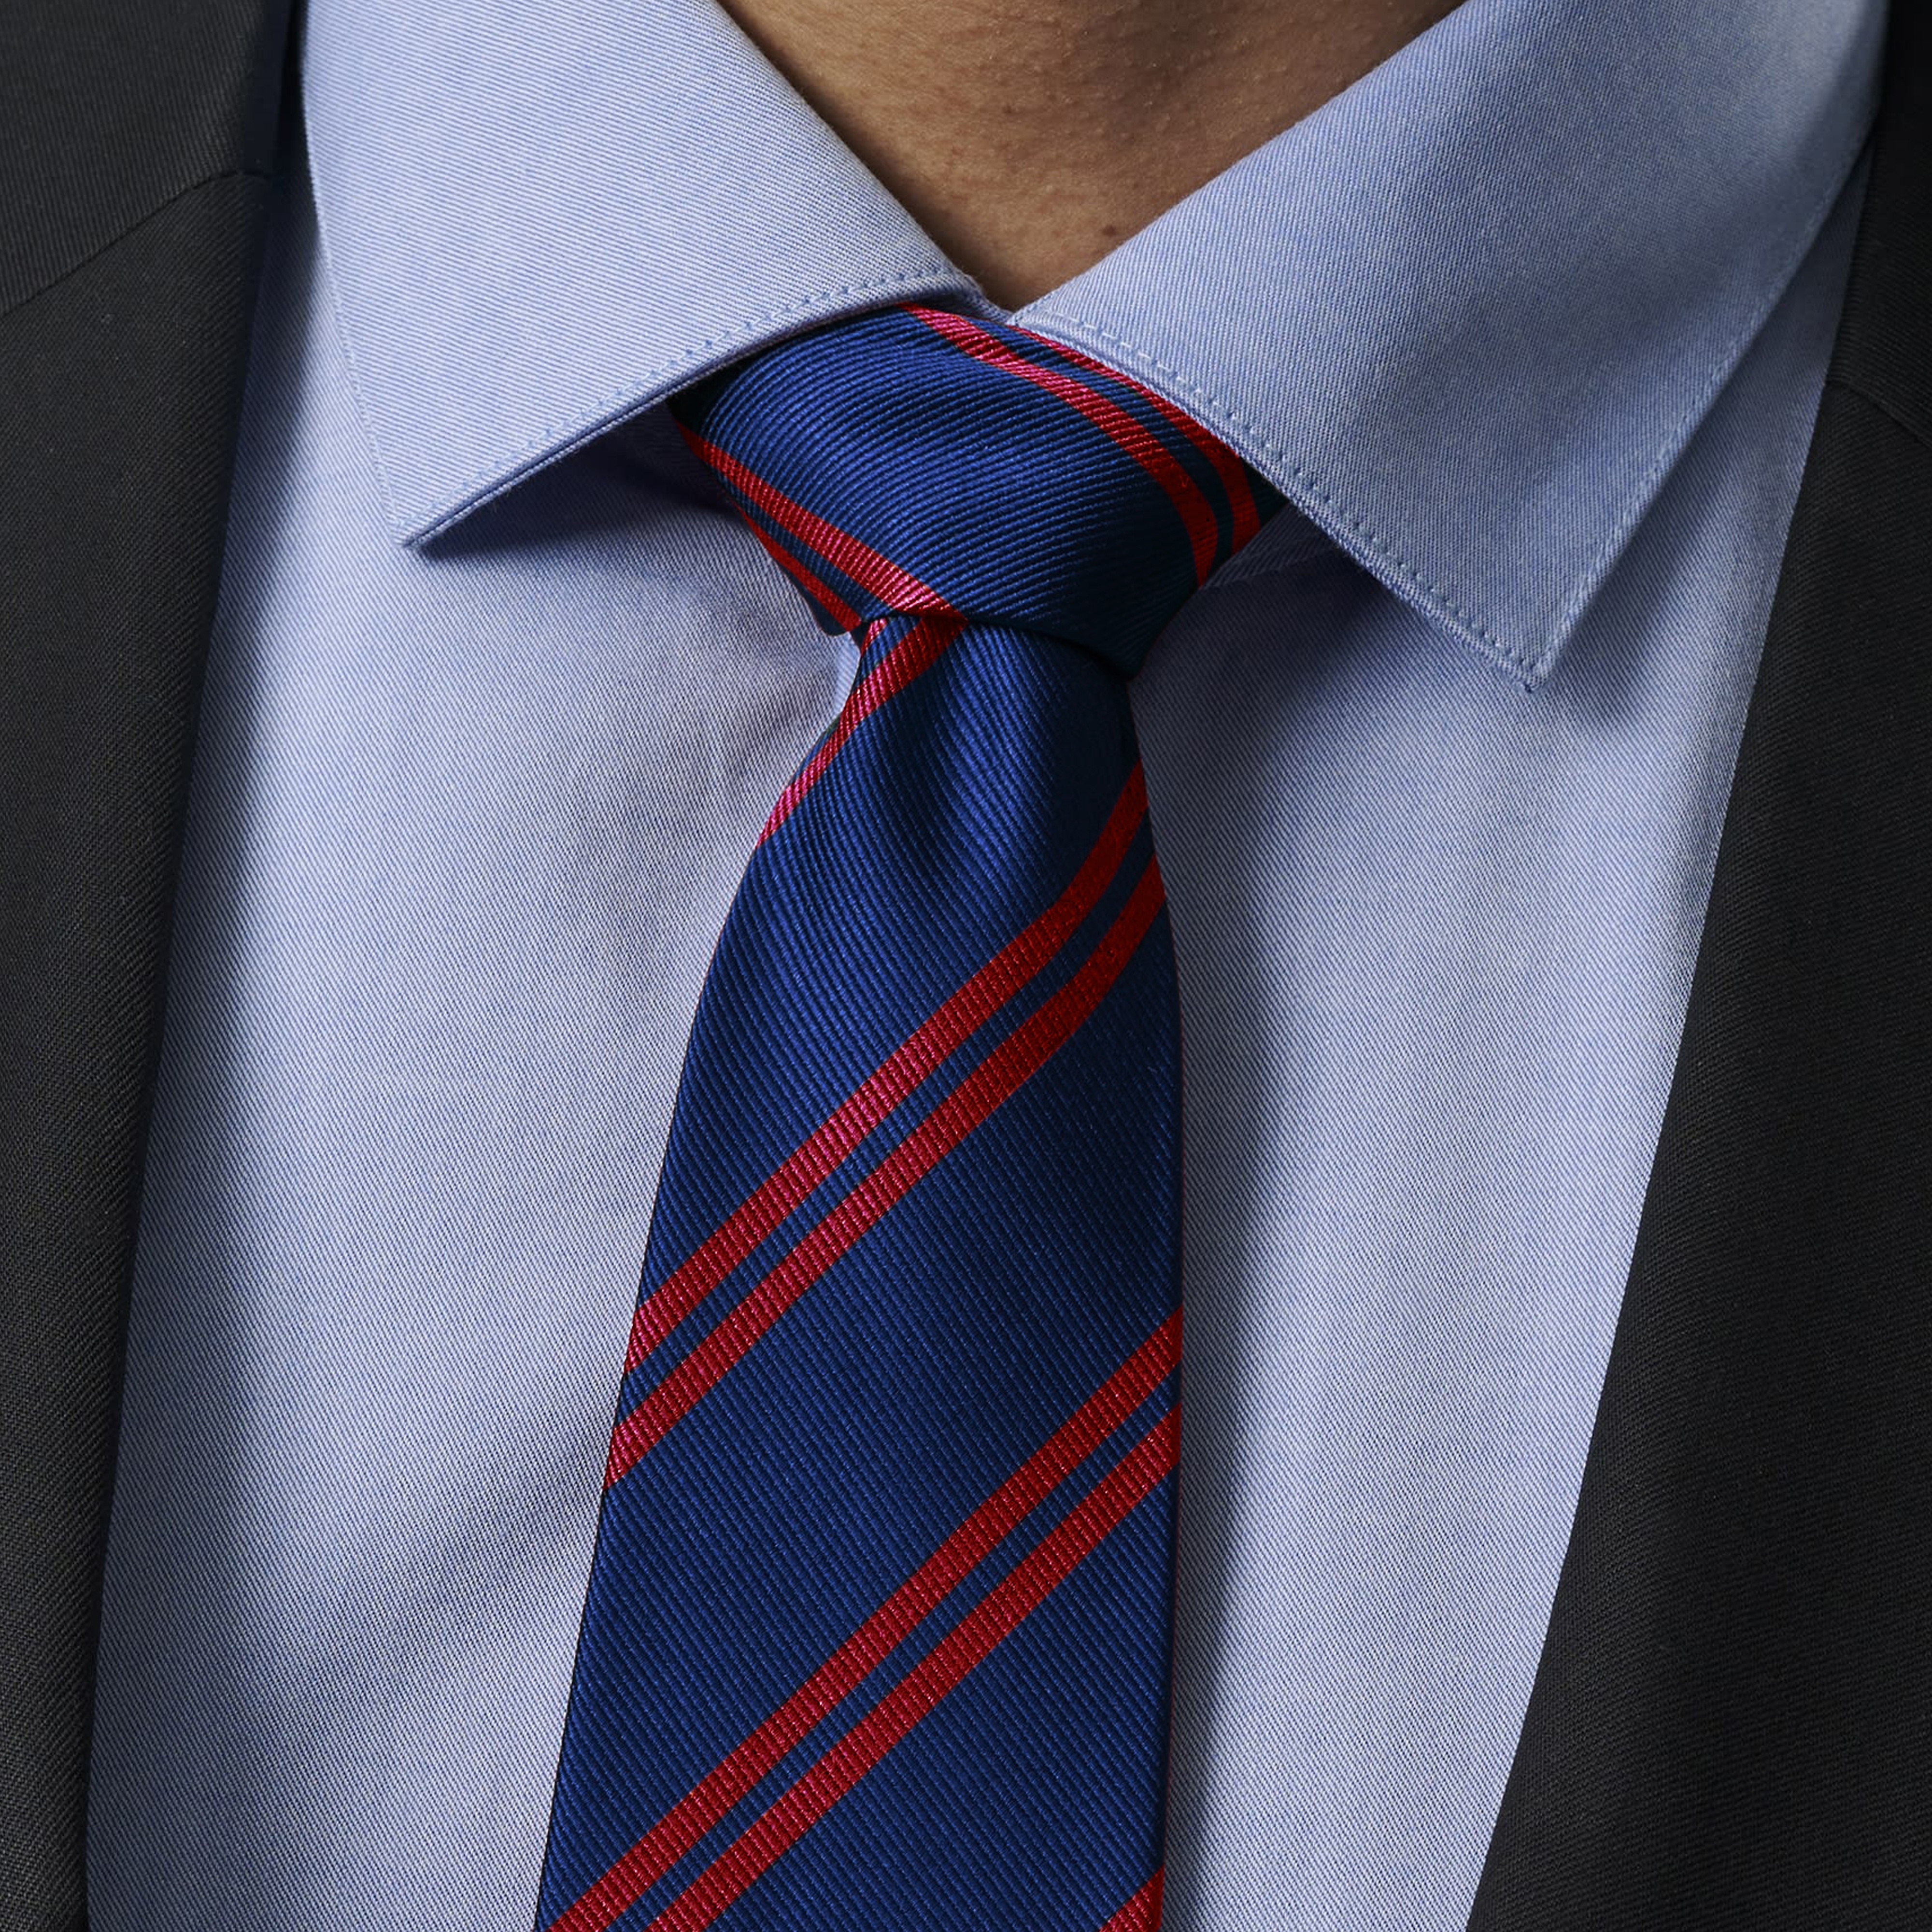 Silk Neckties Stock Photo - Download Image Now - Necktie, Red, Blue - iStock